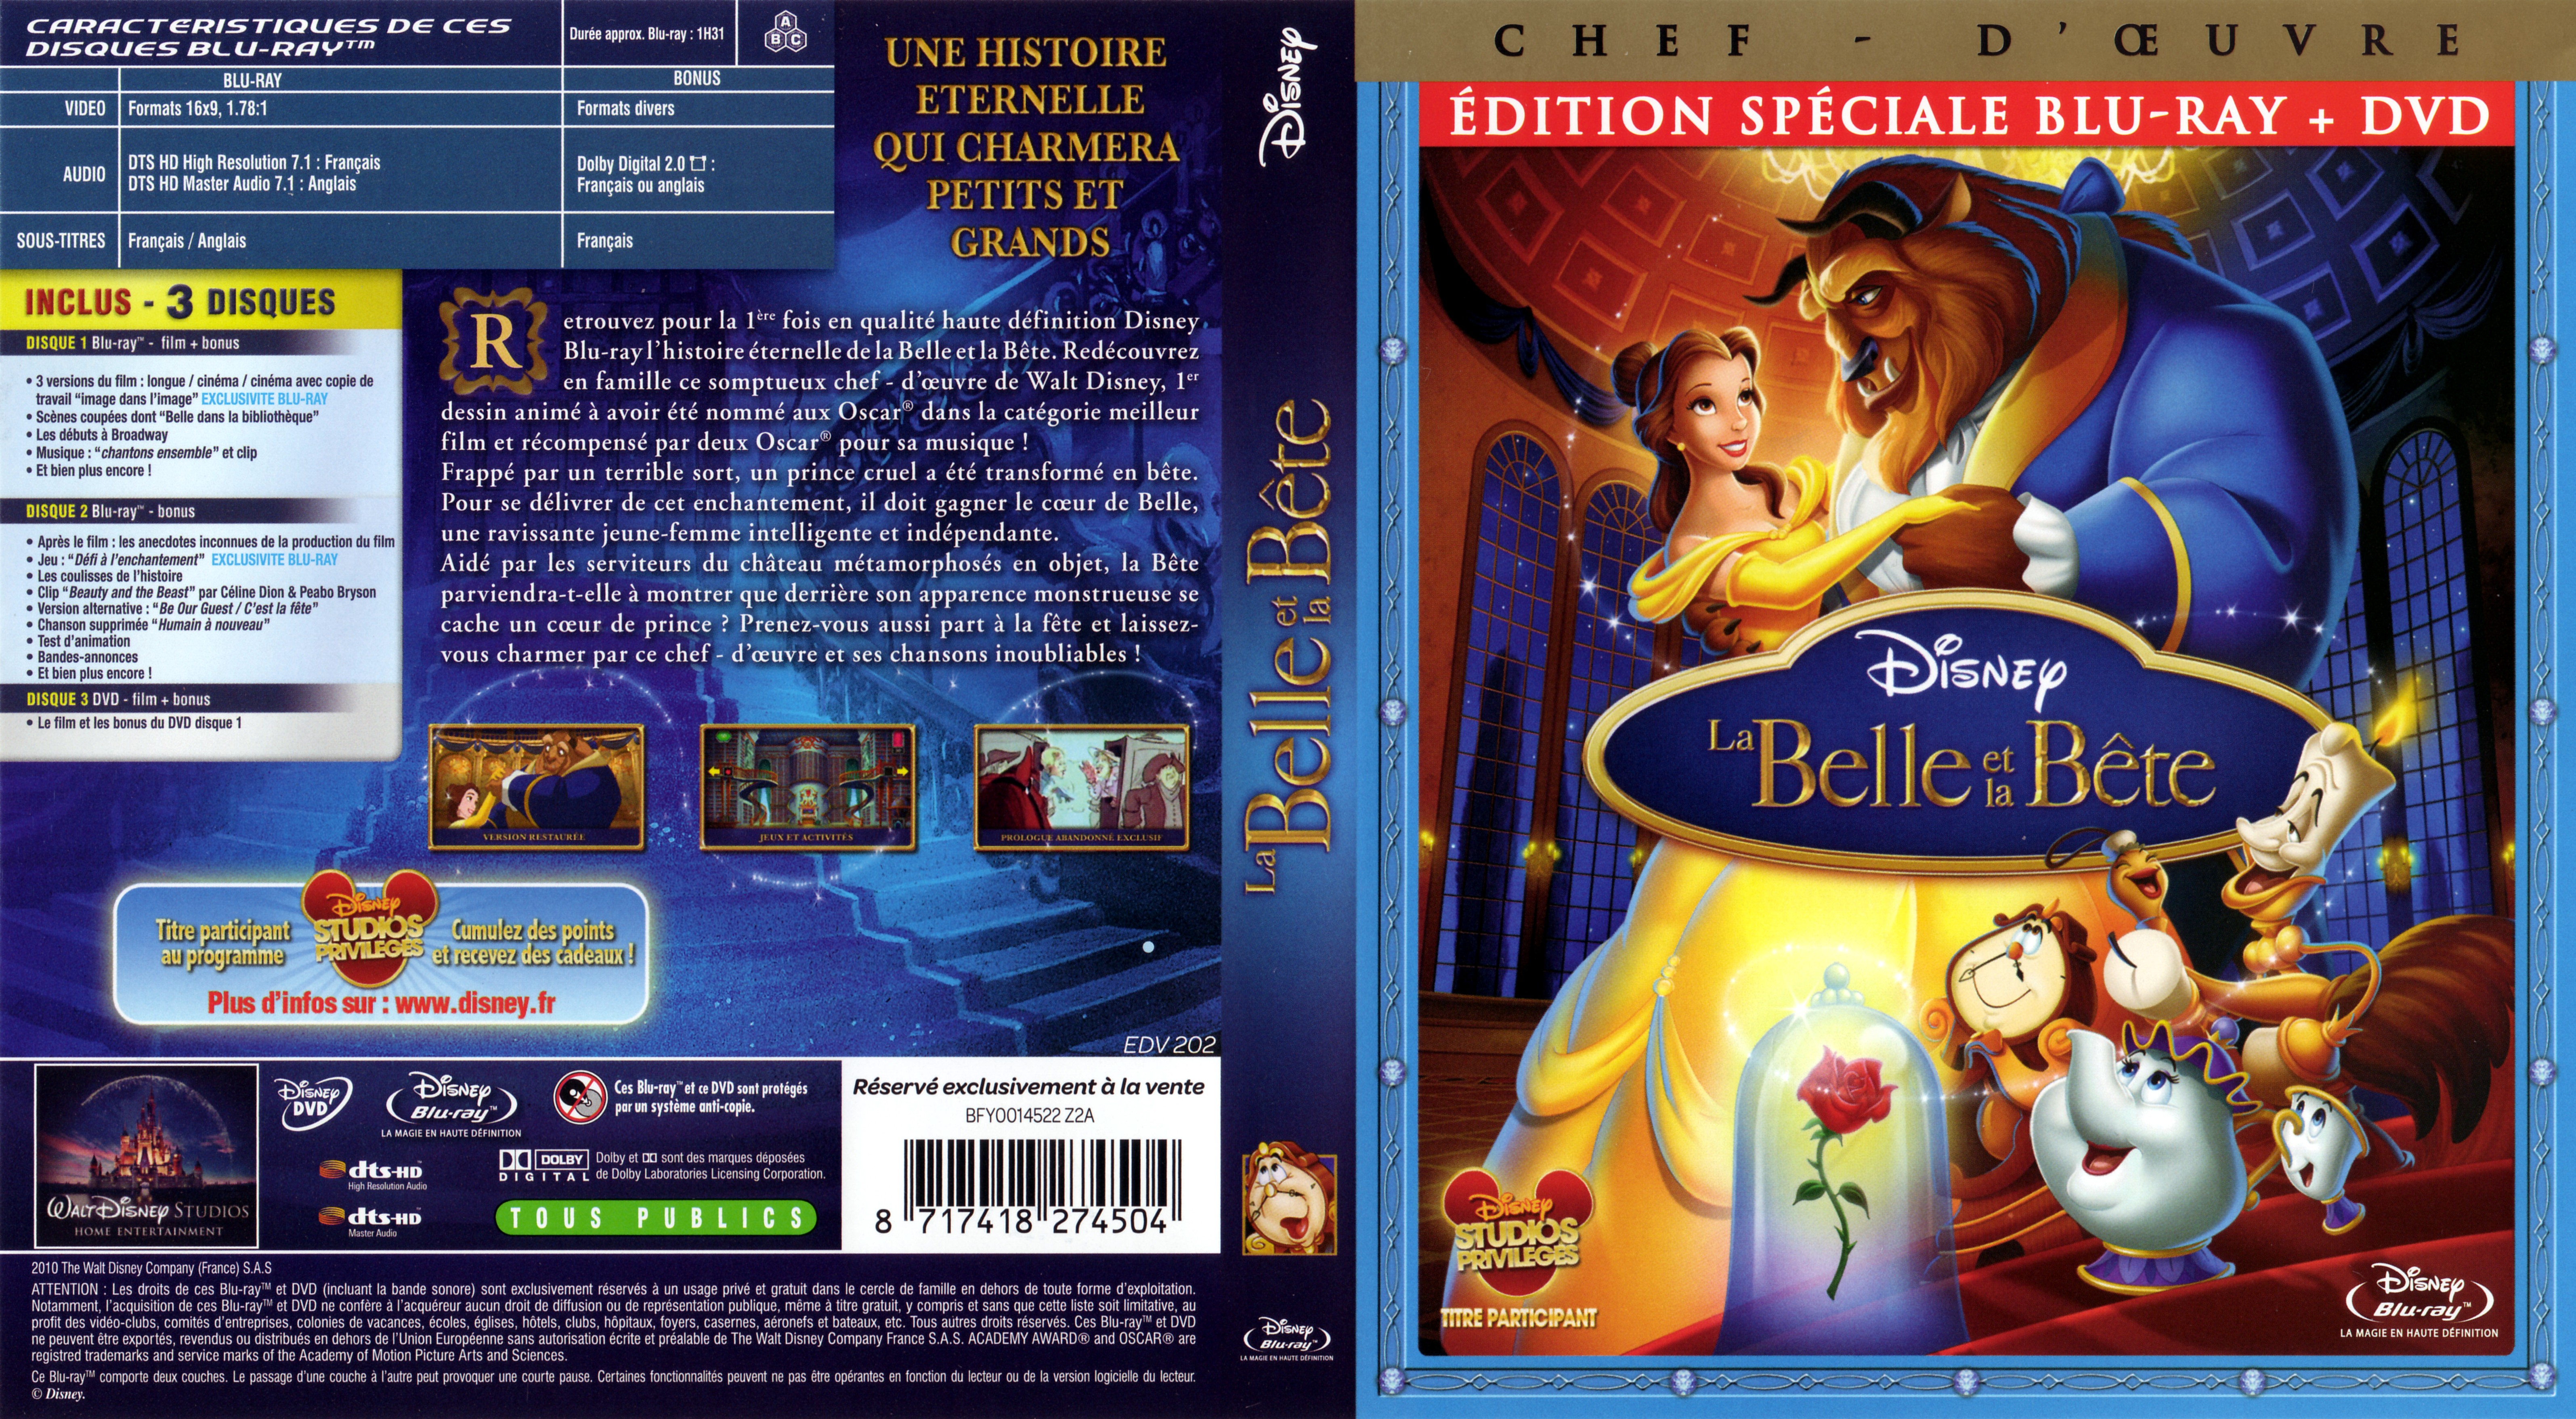 Jaquette DVD La belle et la bte (BLU-RAY)